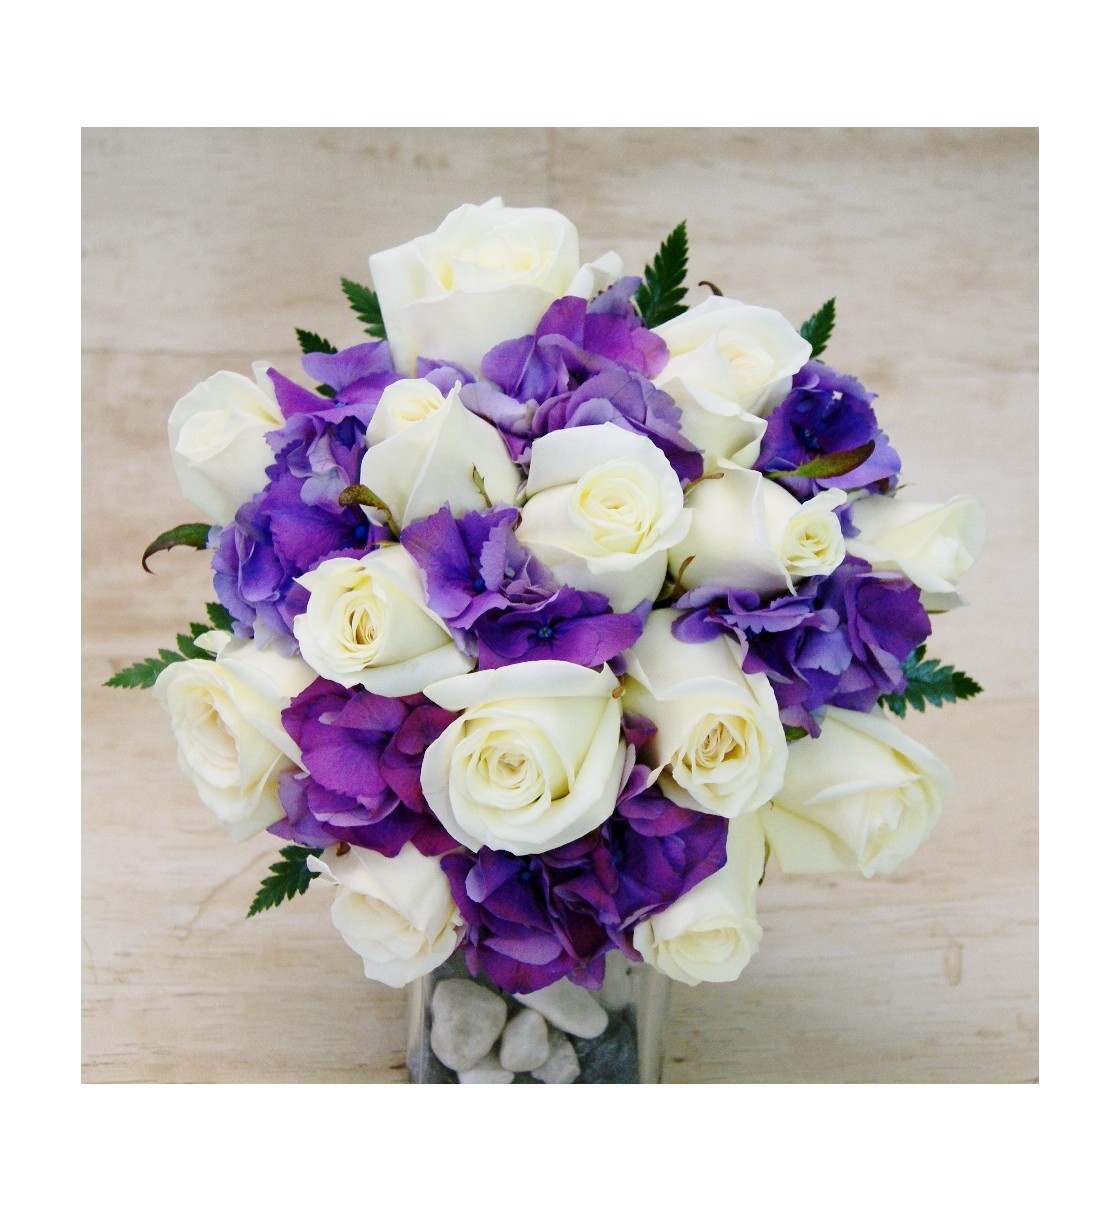 Ramito con hortensia y flores silvestres en tonos suaves